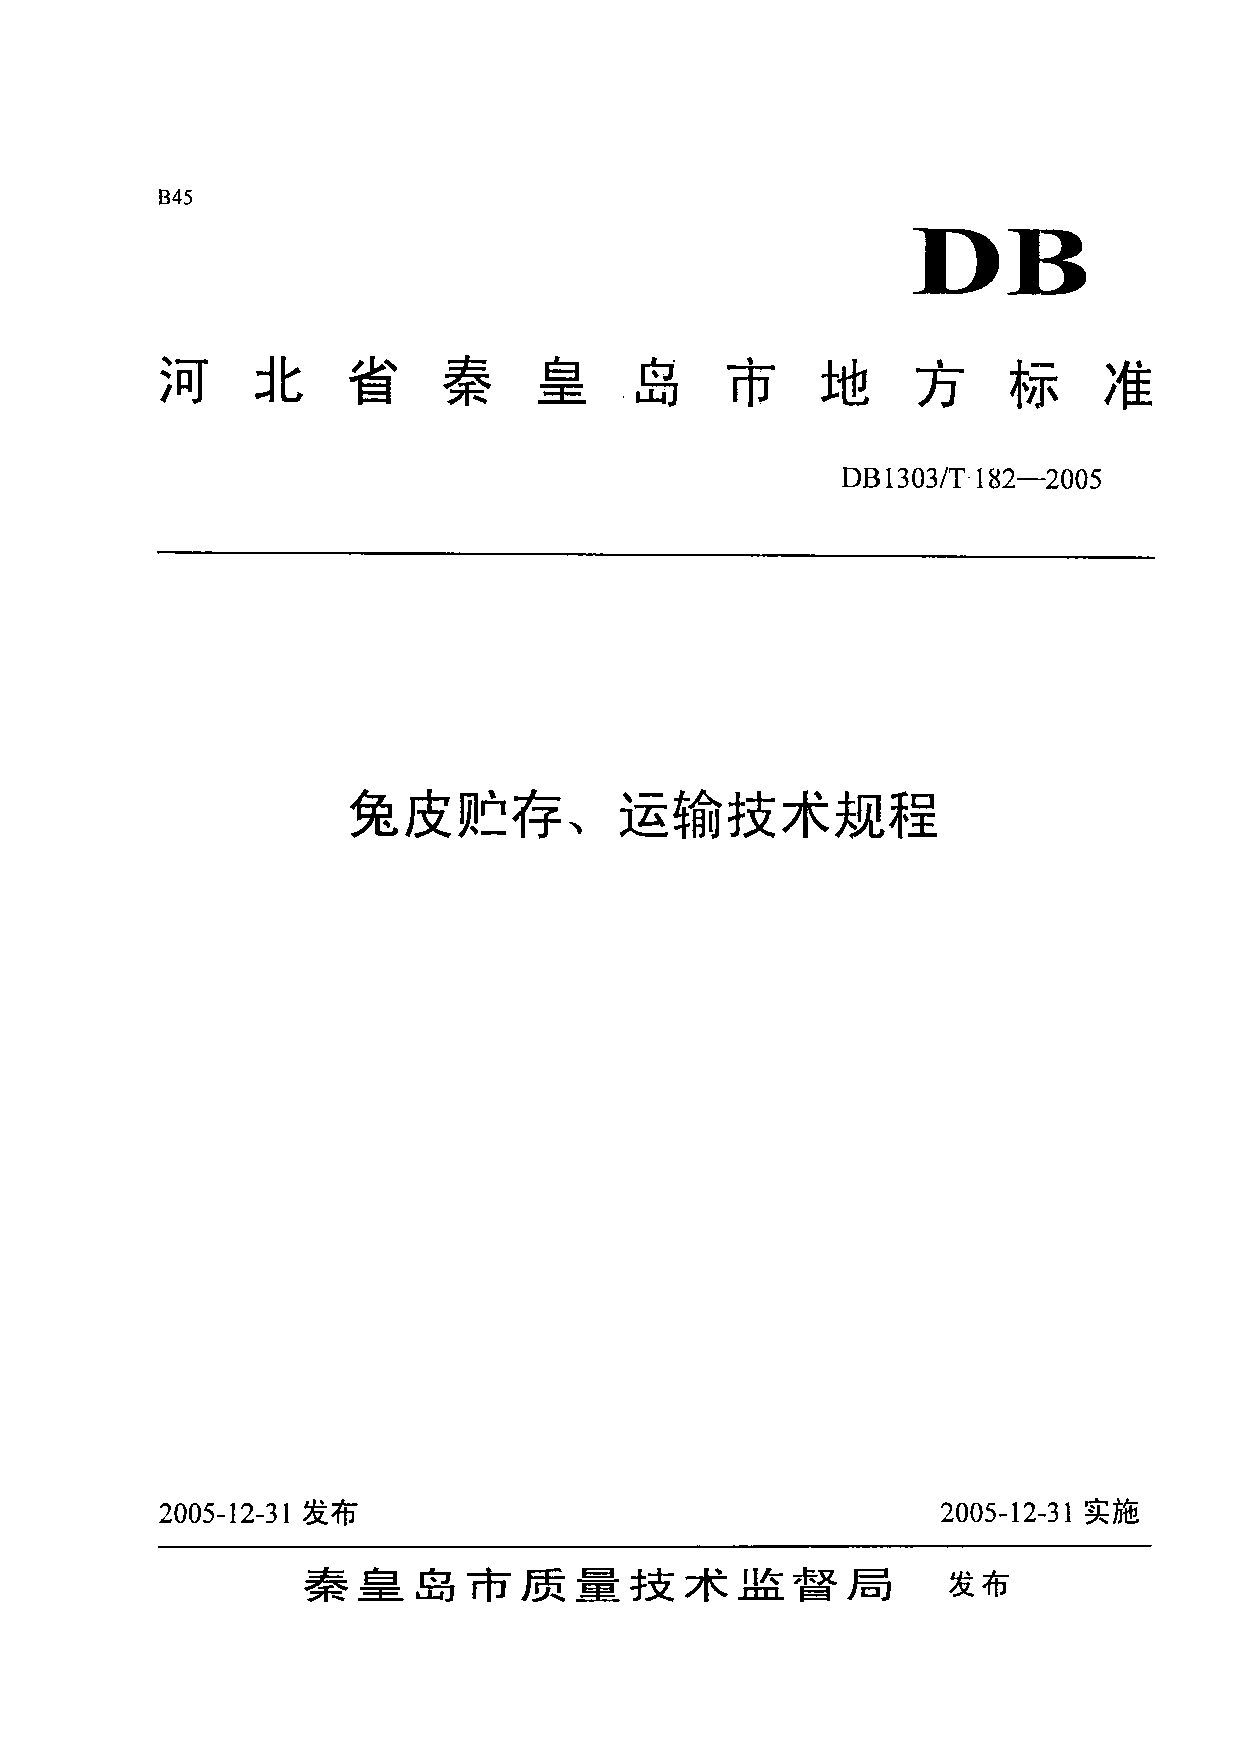 DB1303/T 182-2005封面图